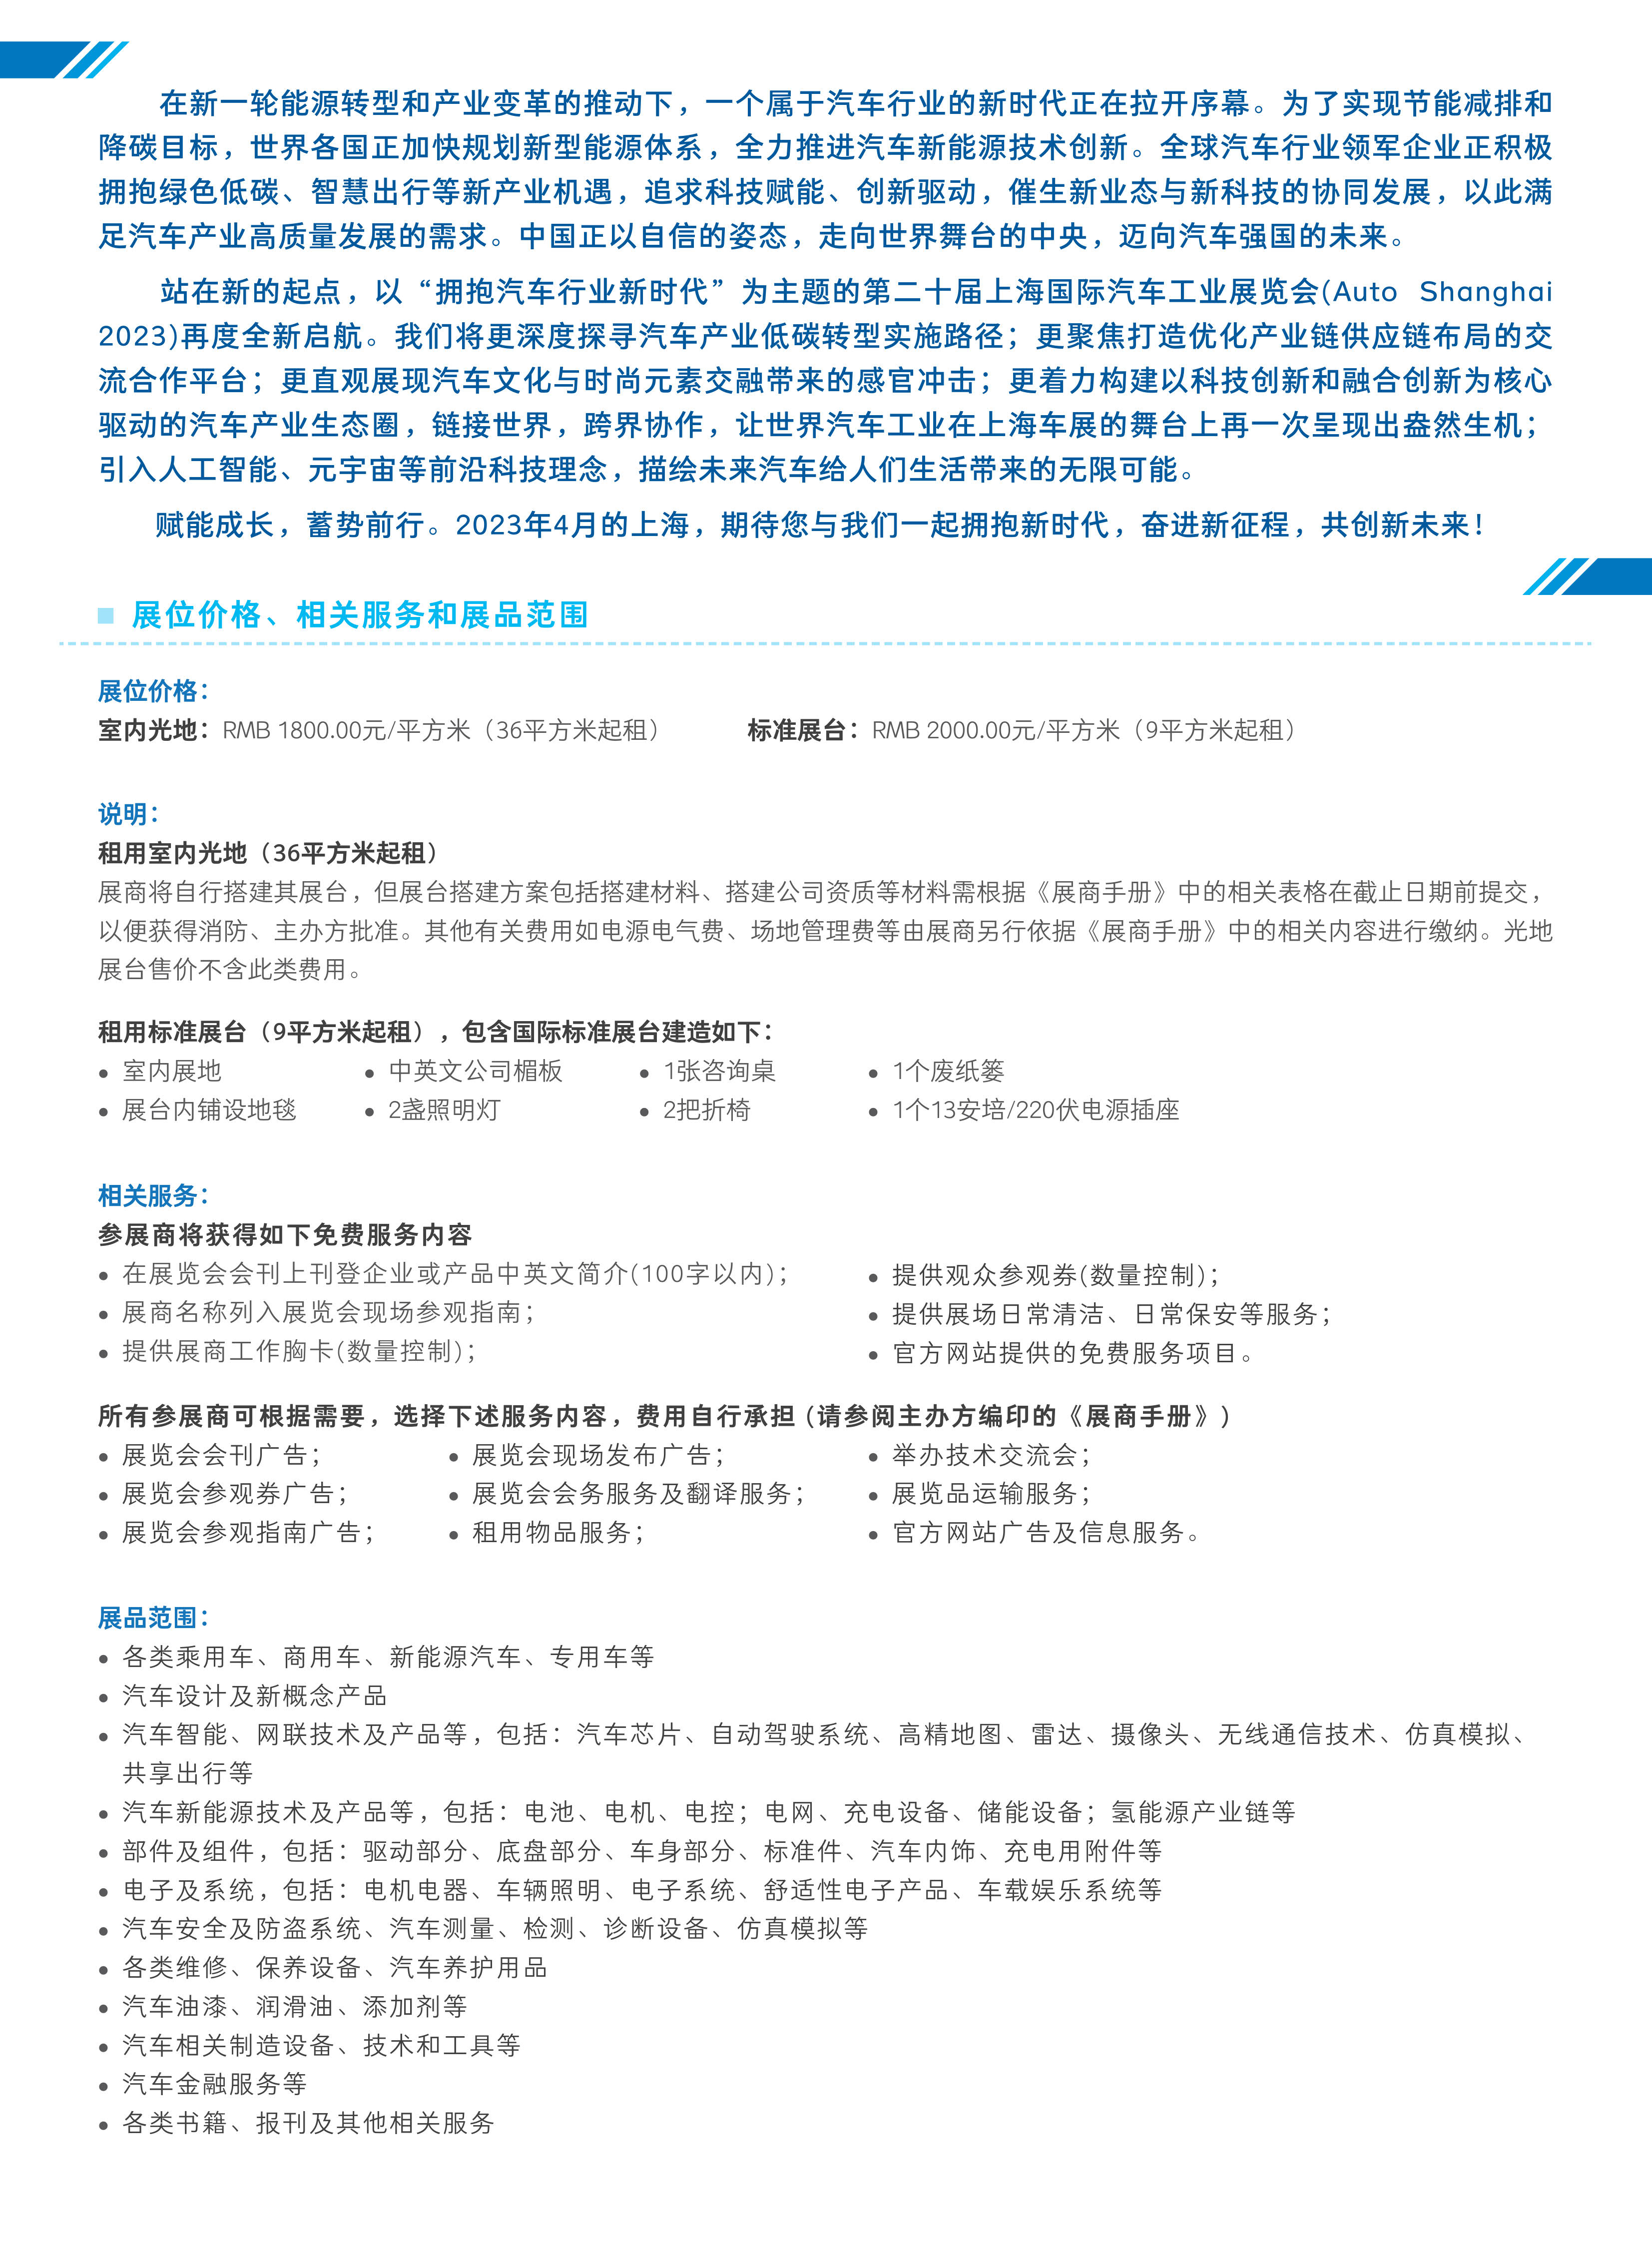 2023上海车展招展书CN_3.jpg